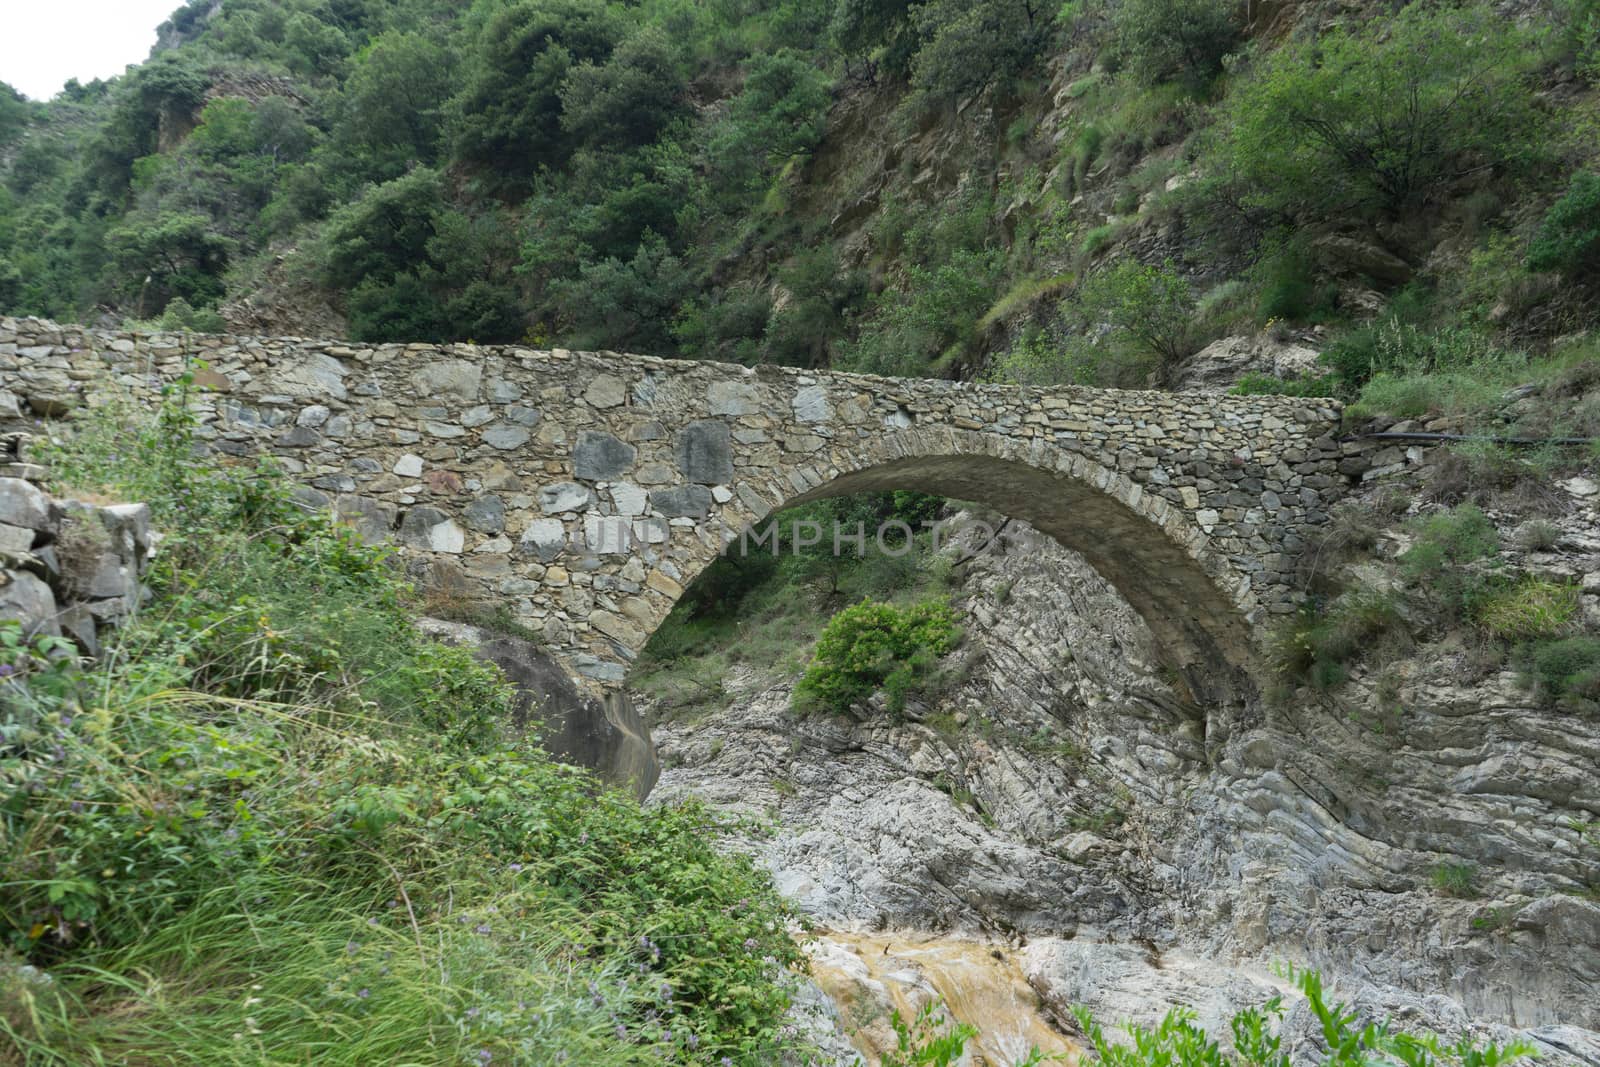 Stone bridge in the Nervia Valley View near the Rio Barbaira stream, Rocchetta Nervina, Liguria - Italy